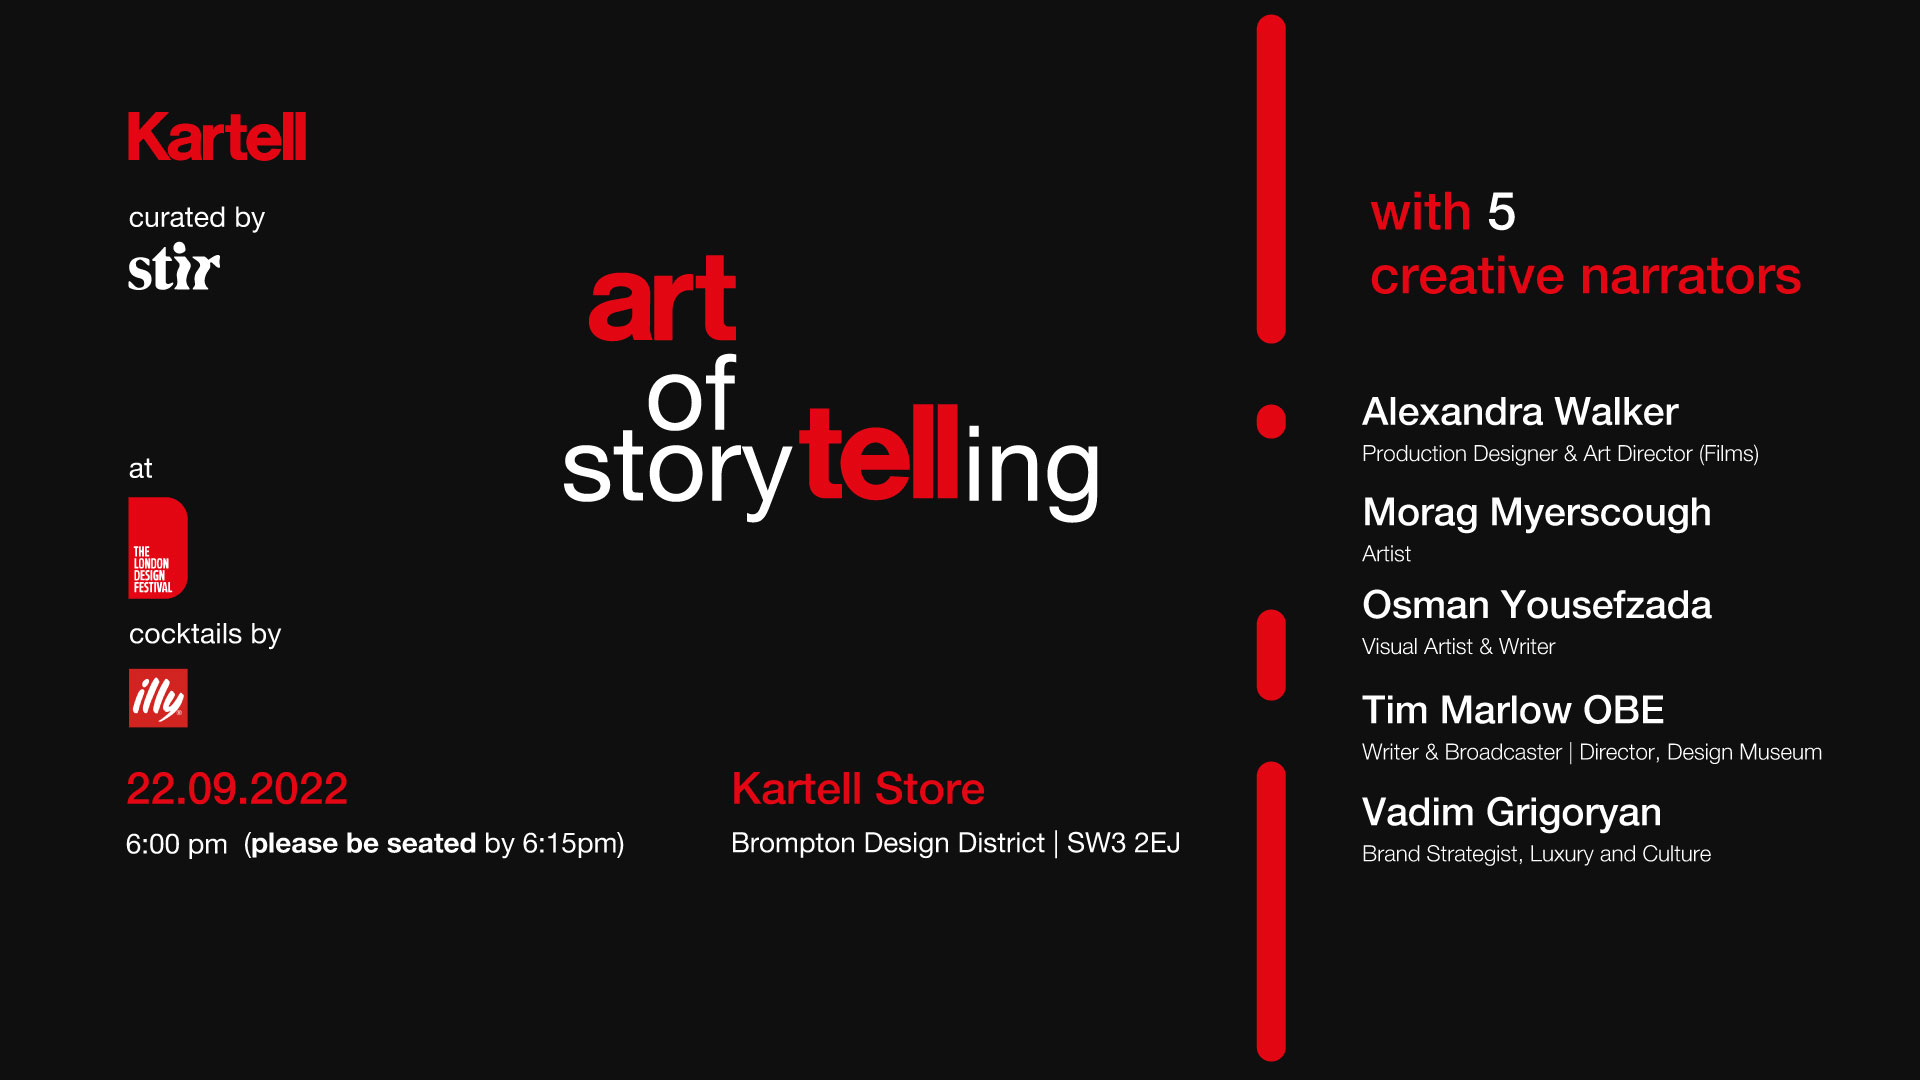 Kartell presents 'Art of Storytelling’ at London Design Festival 2022